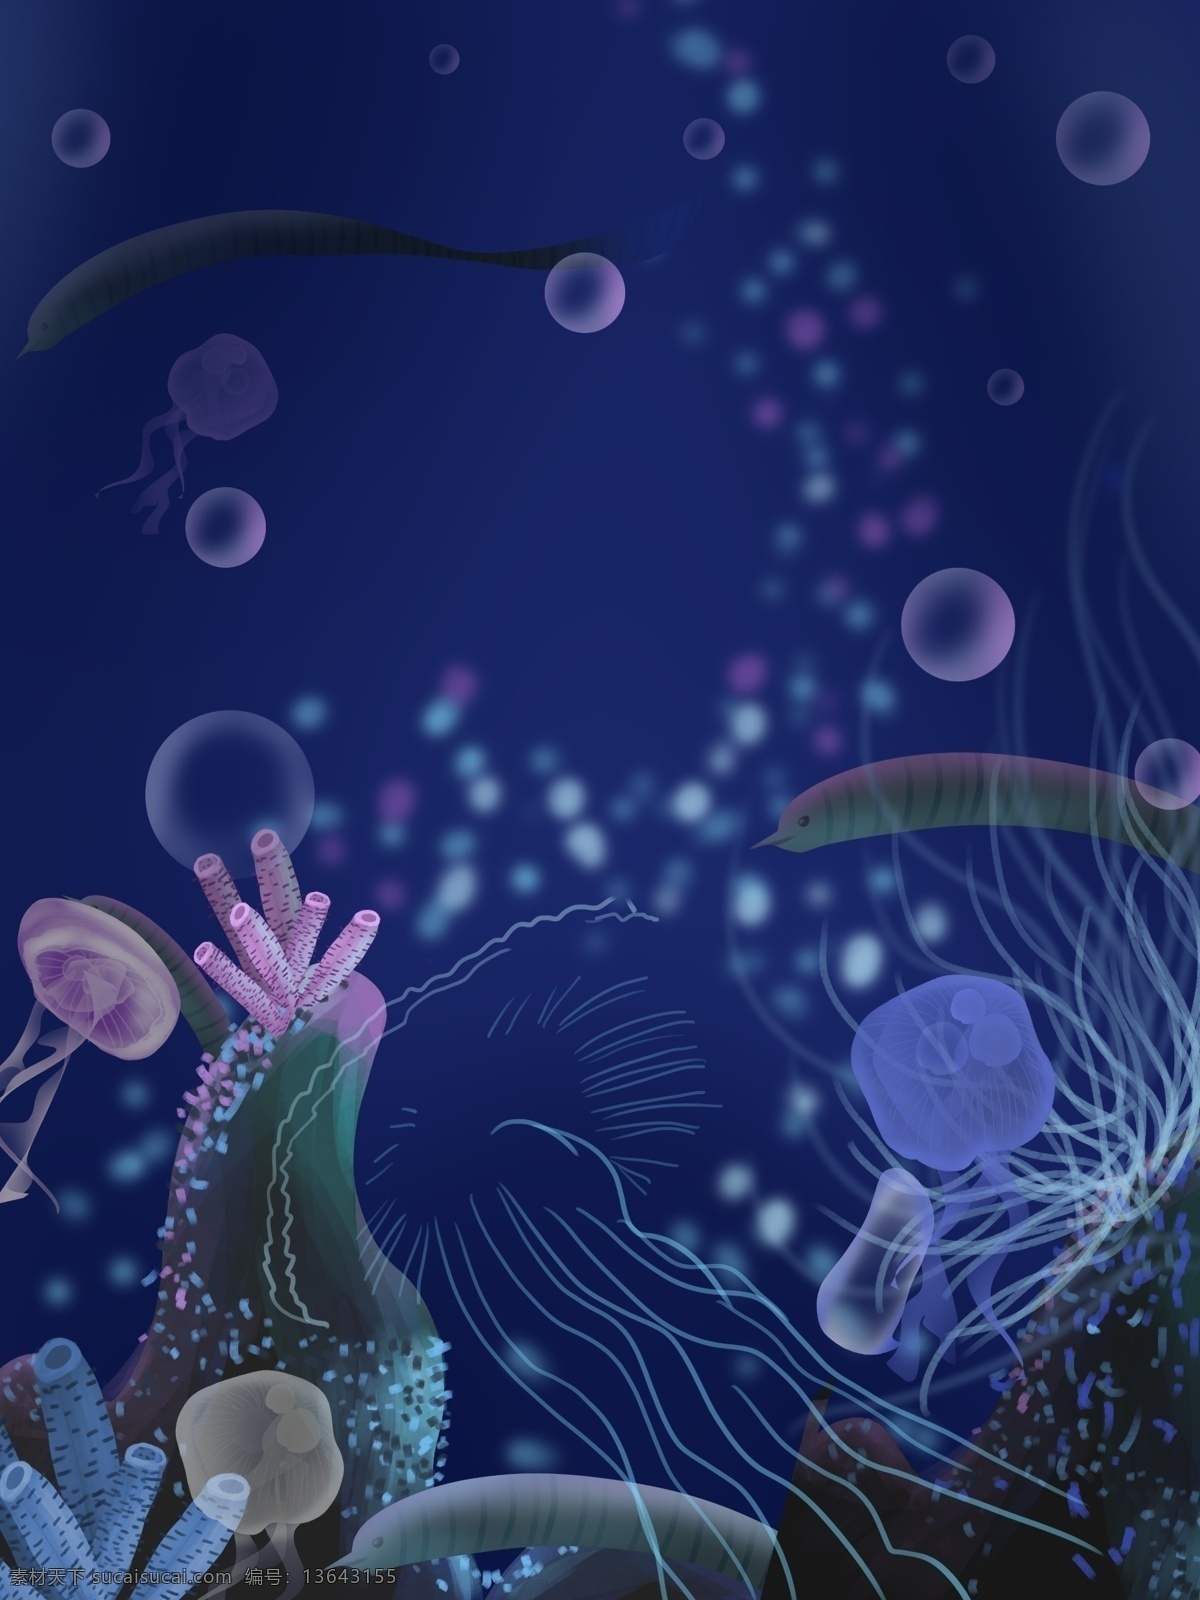 蓝色 梦幻 海底 水母 背景 蓝色背景 海洋 大海 水草 海底世界 手绘背景 通用背景 背景展板图 背景图